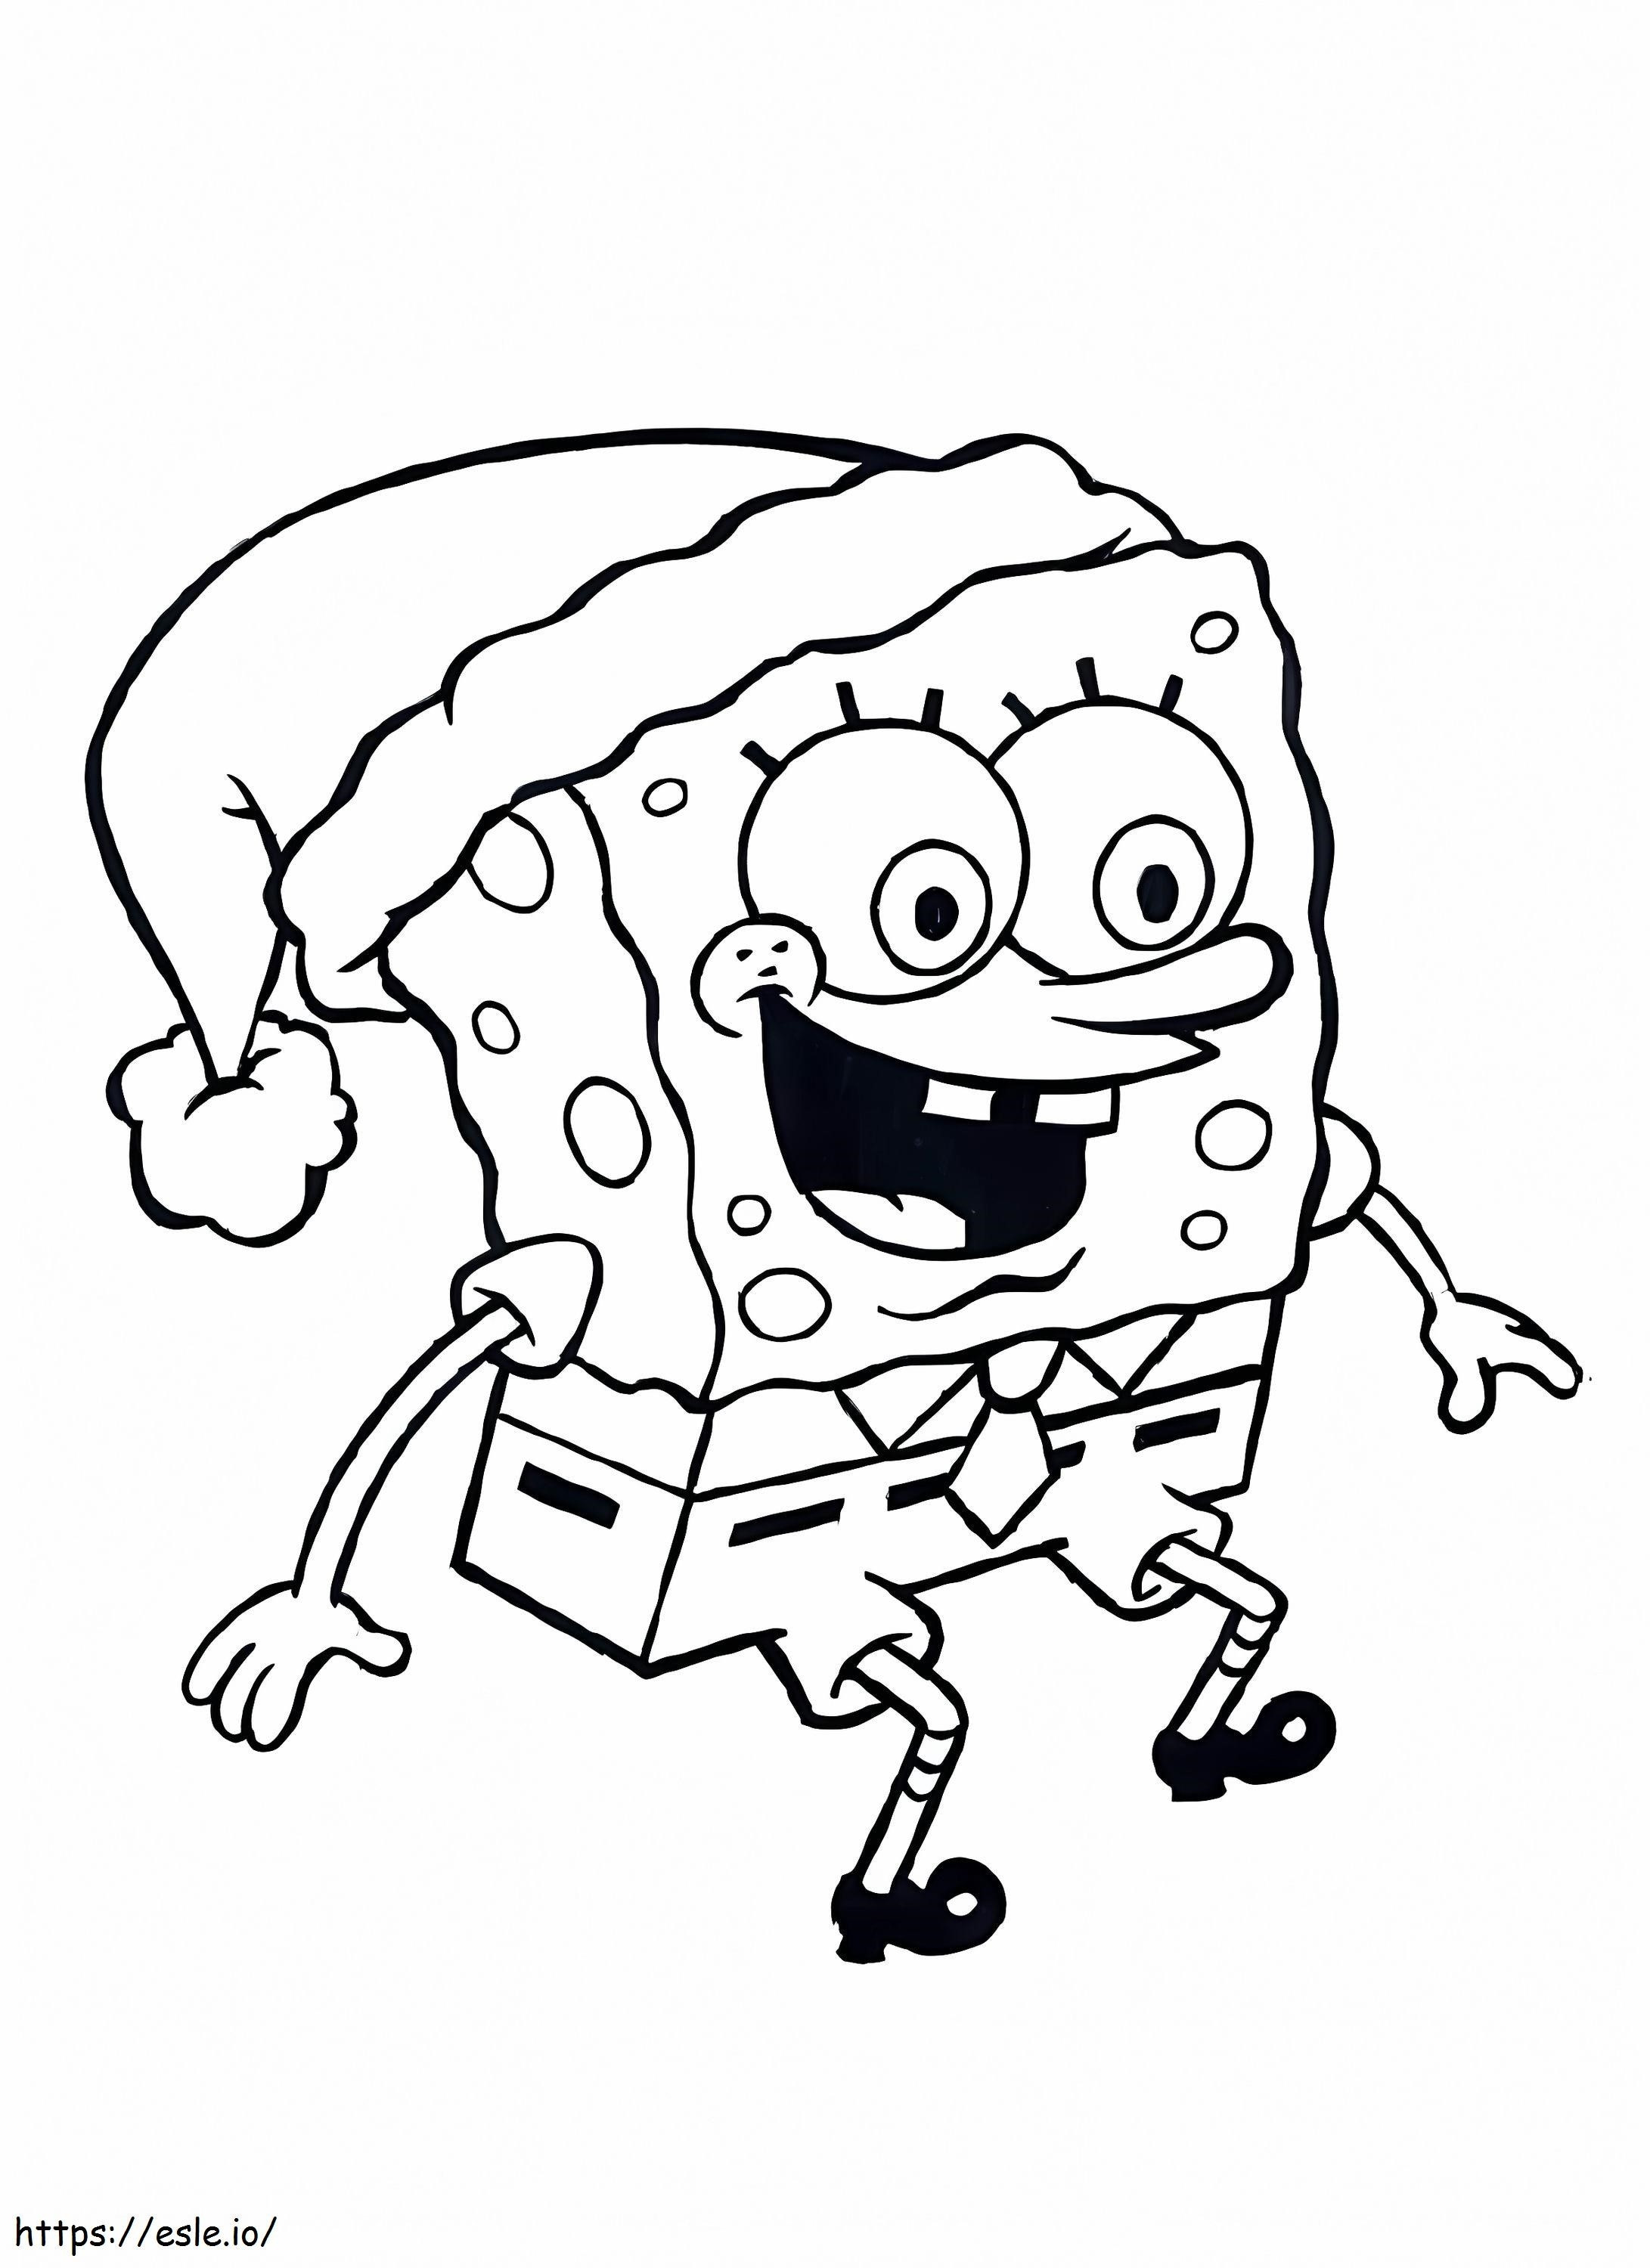 SpongeBob auf Weihnachtsmütze ausmalbilder